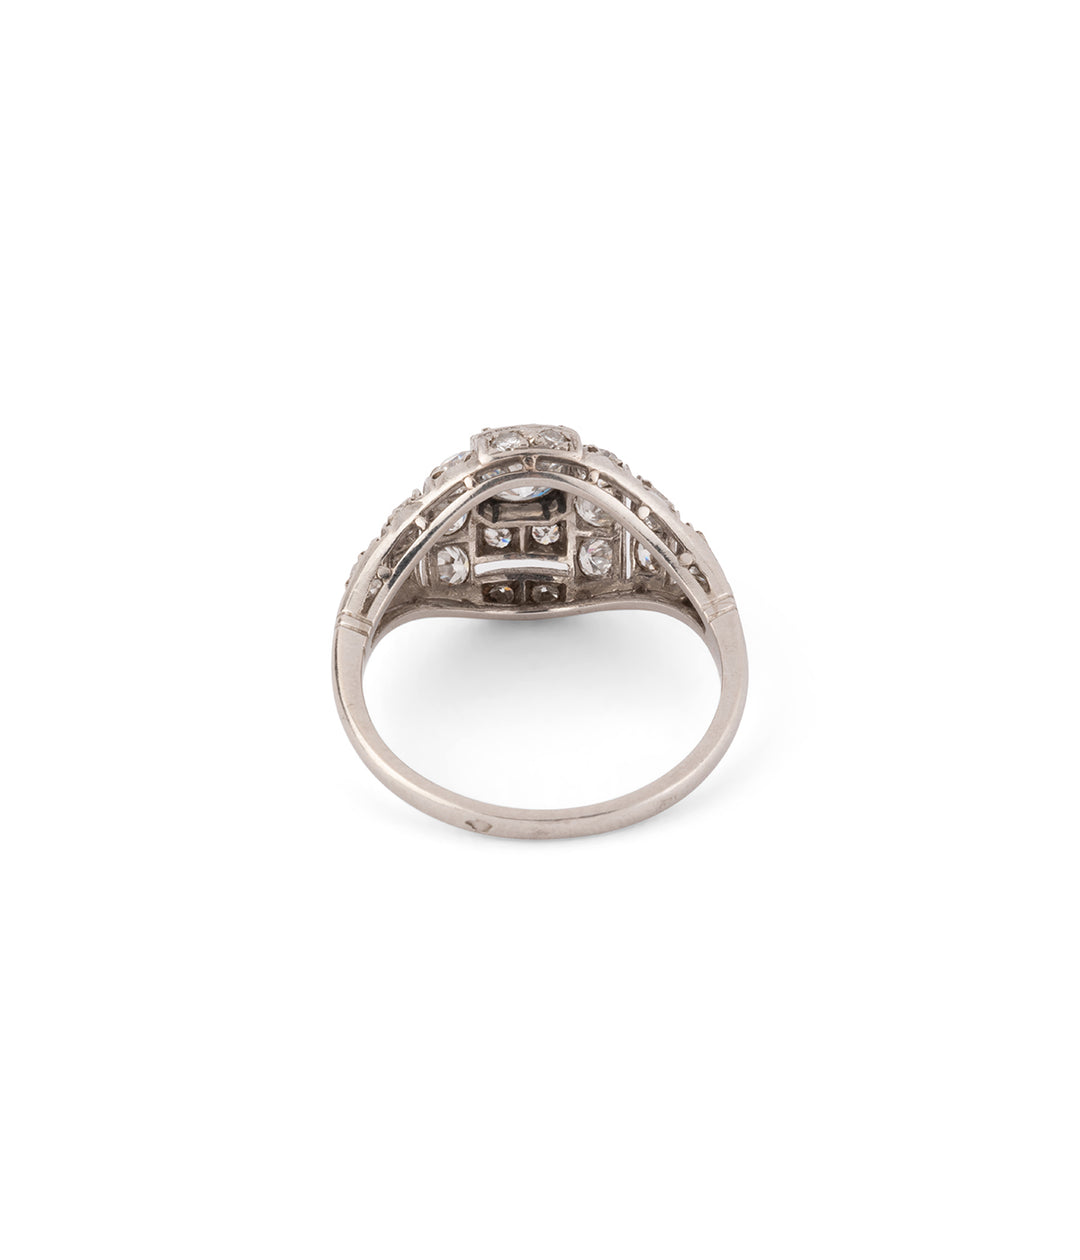 Art deco antique ring engagement ring platinum and diamonds "Eamon" - Caillou Paris